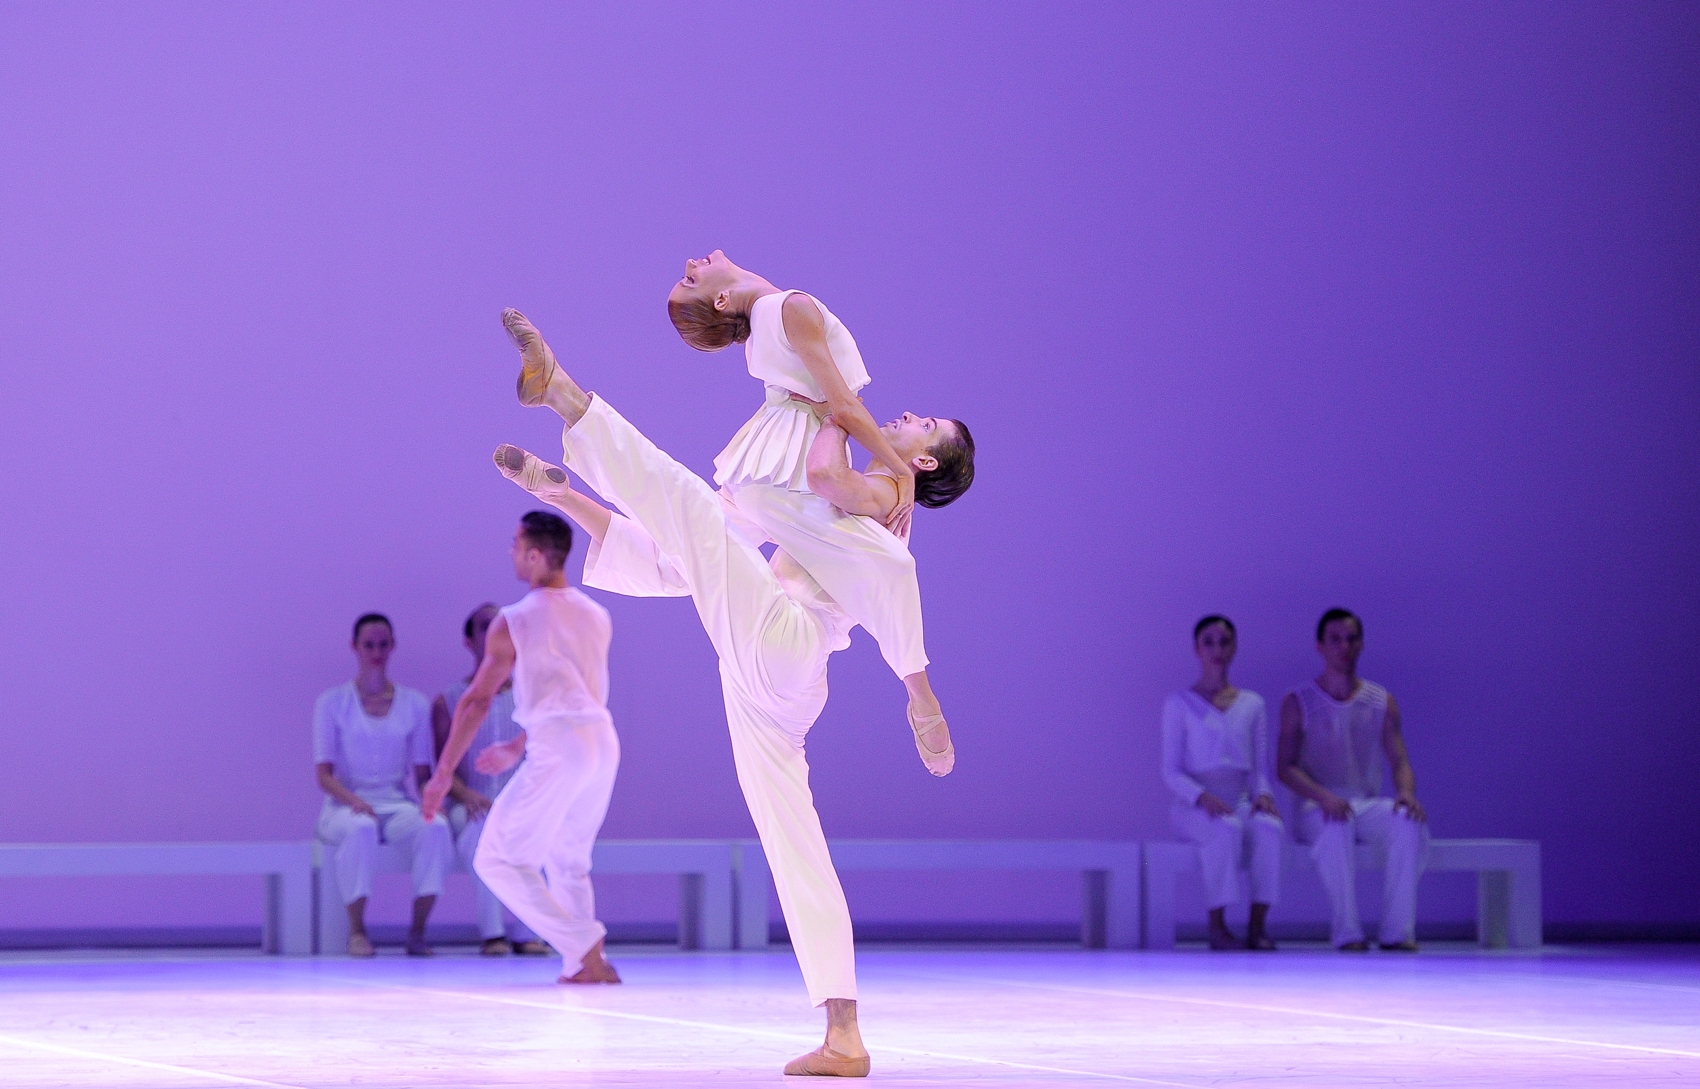 El Ballet Nacional del Sodre (Uruguay) interpreta "El Mesías" con coreografía de Mauricio Wainrot sobre la partitura de Händel. Foto Santiago Barreiro/BNS.